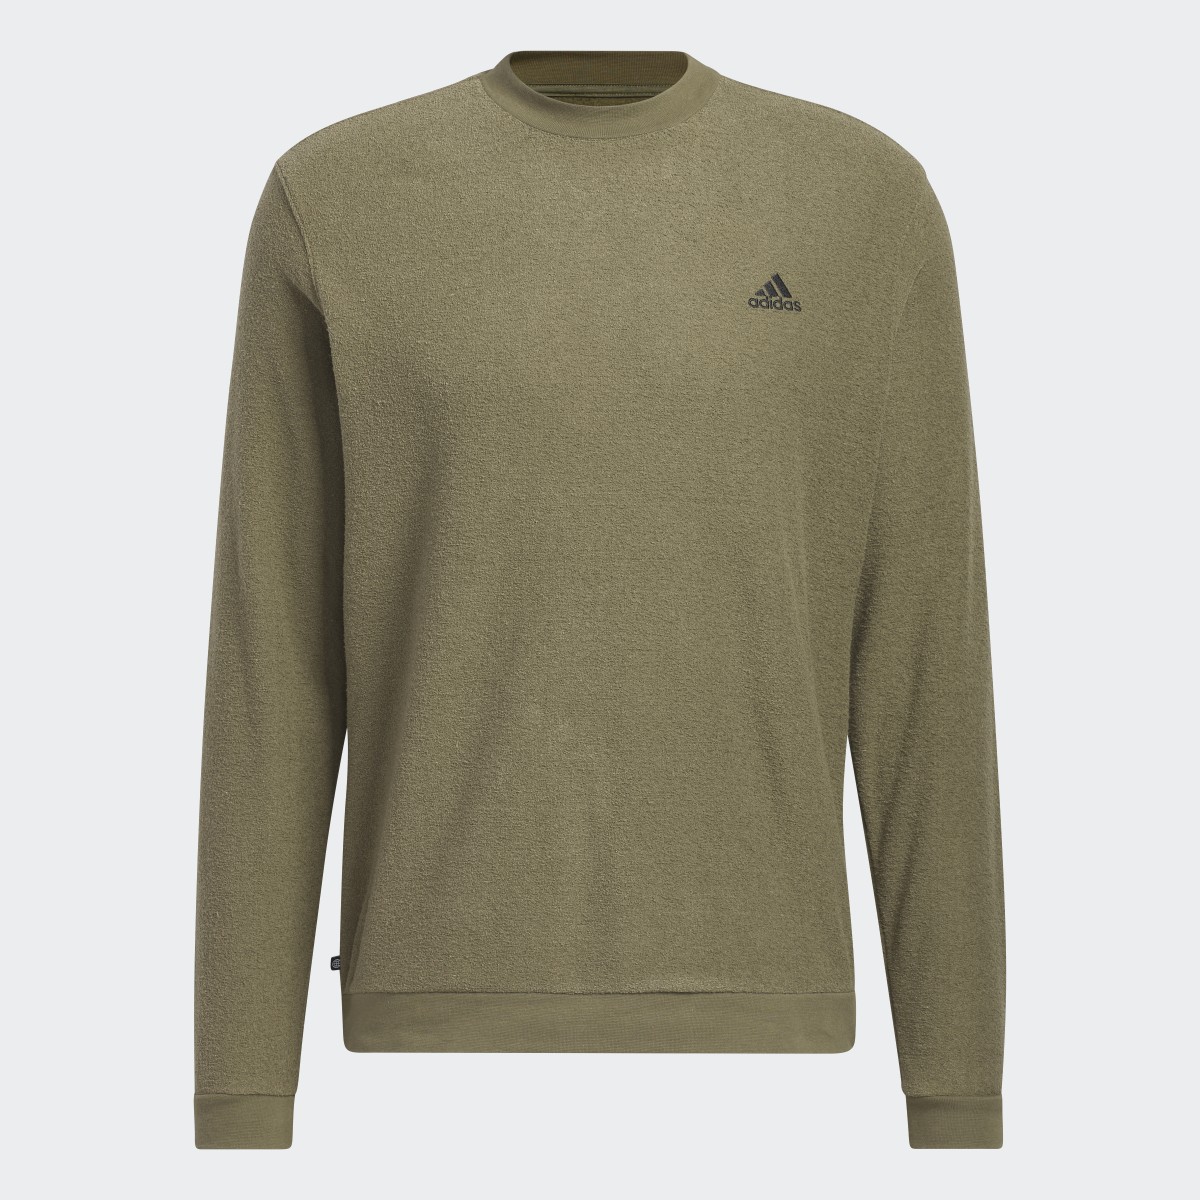 Adidas Core Sweatshirt. 5